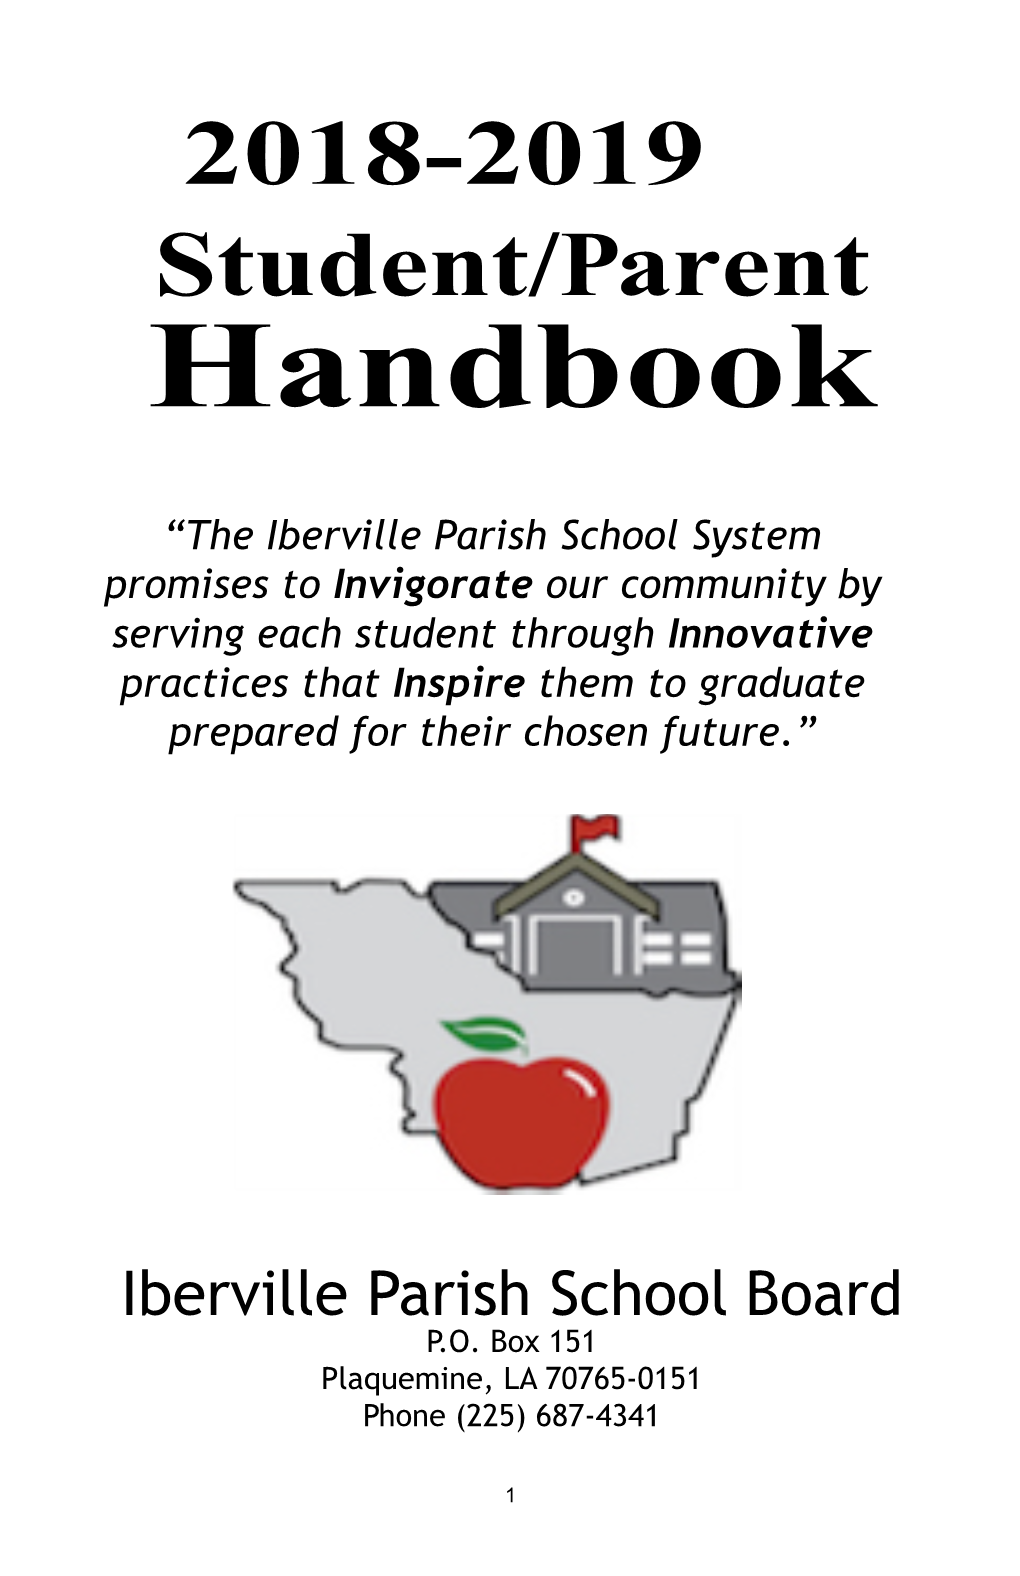 Iberville Parish Public Schools